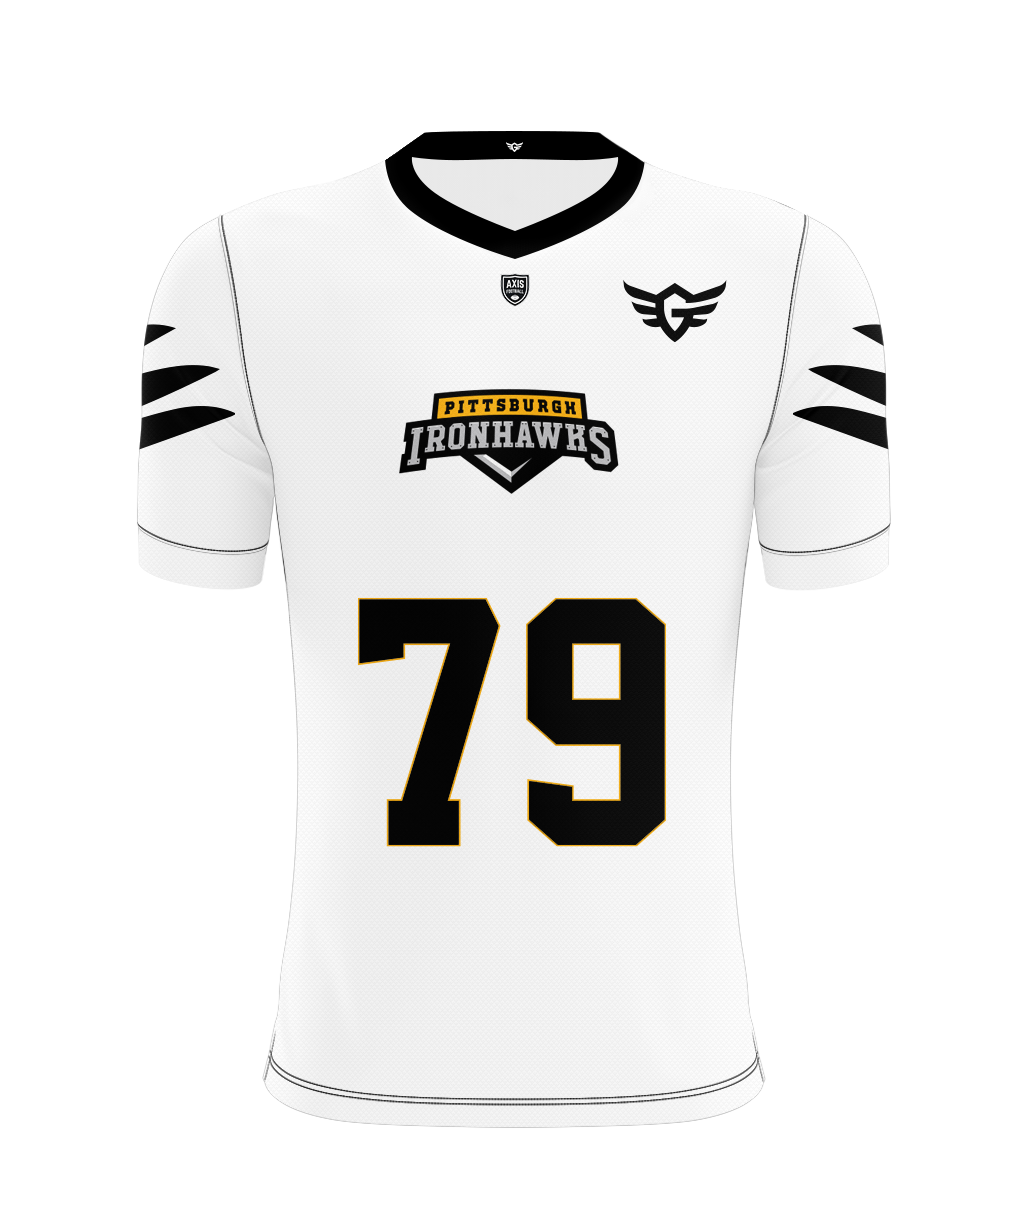 Pittsburgh Ironhawks Away Jersey